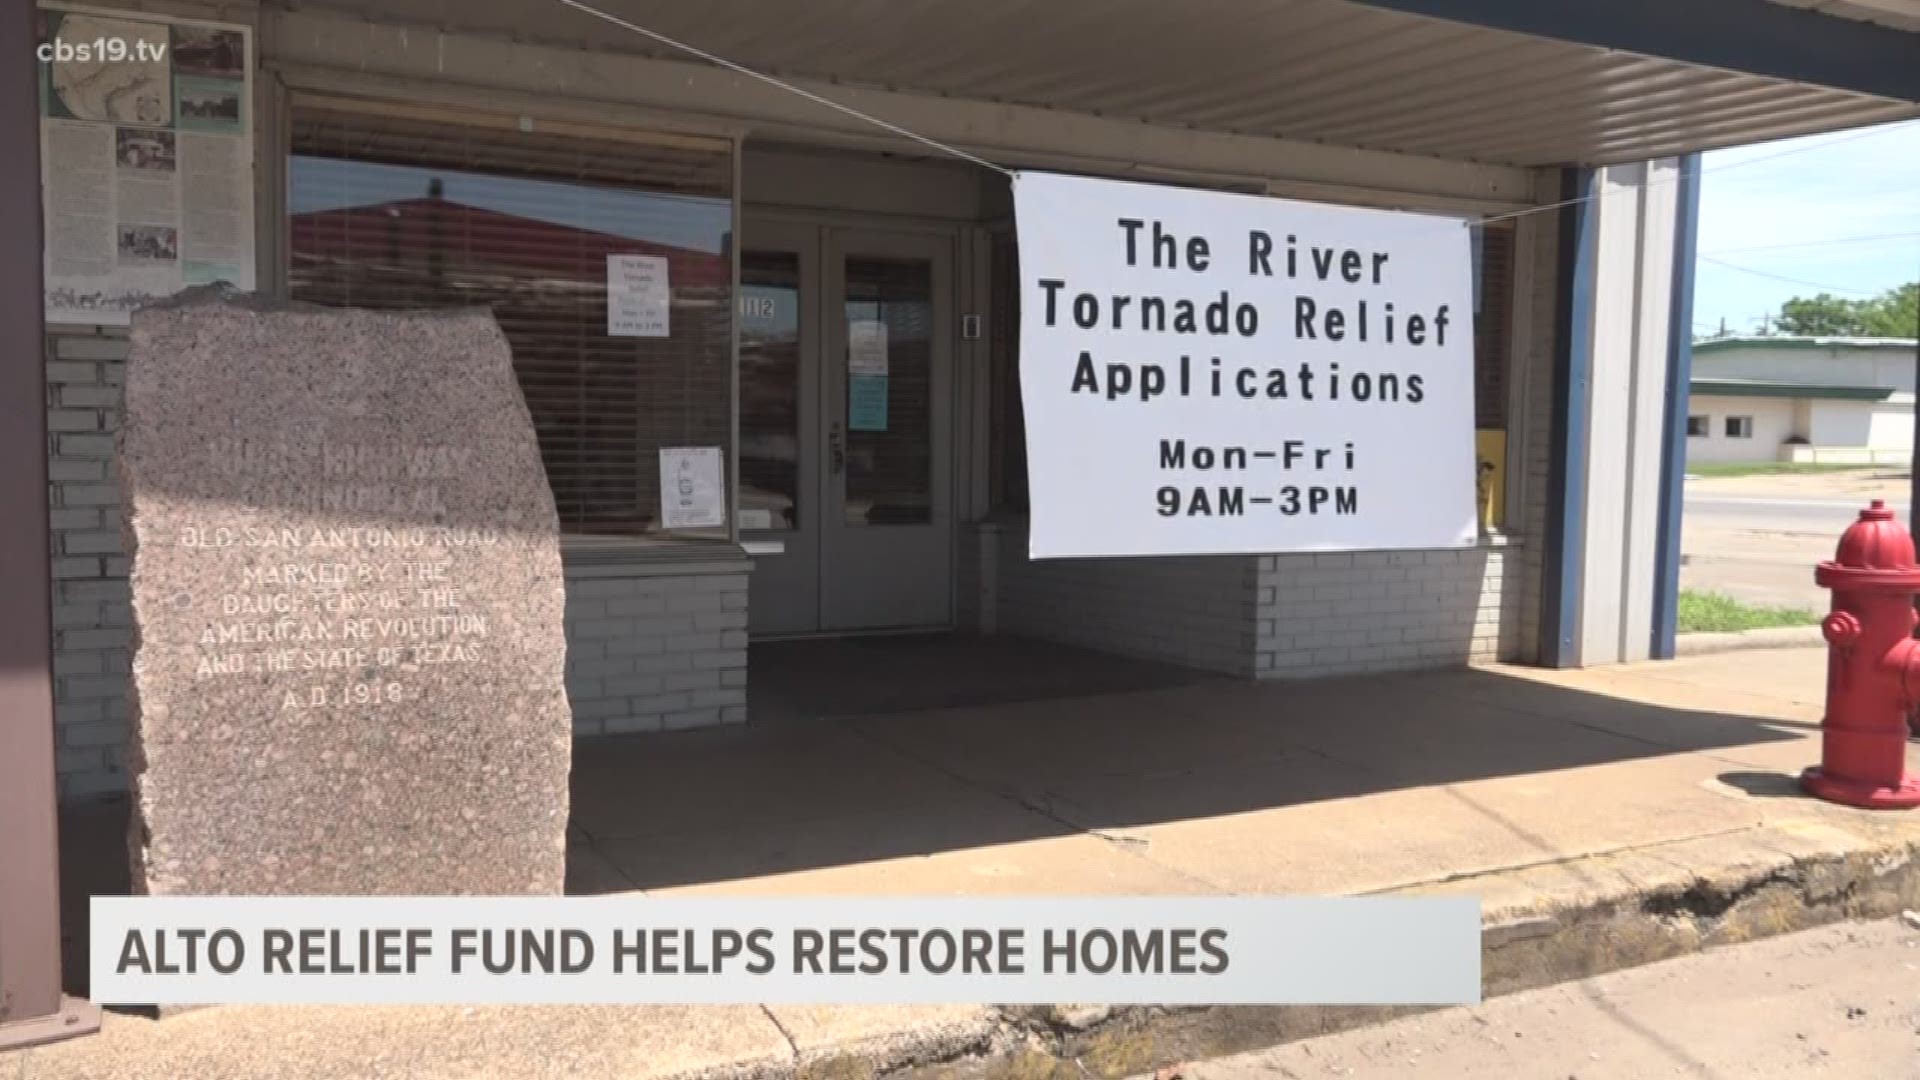 Alto relief fund helps rebuild homes